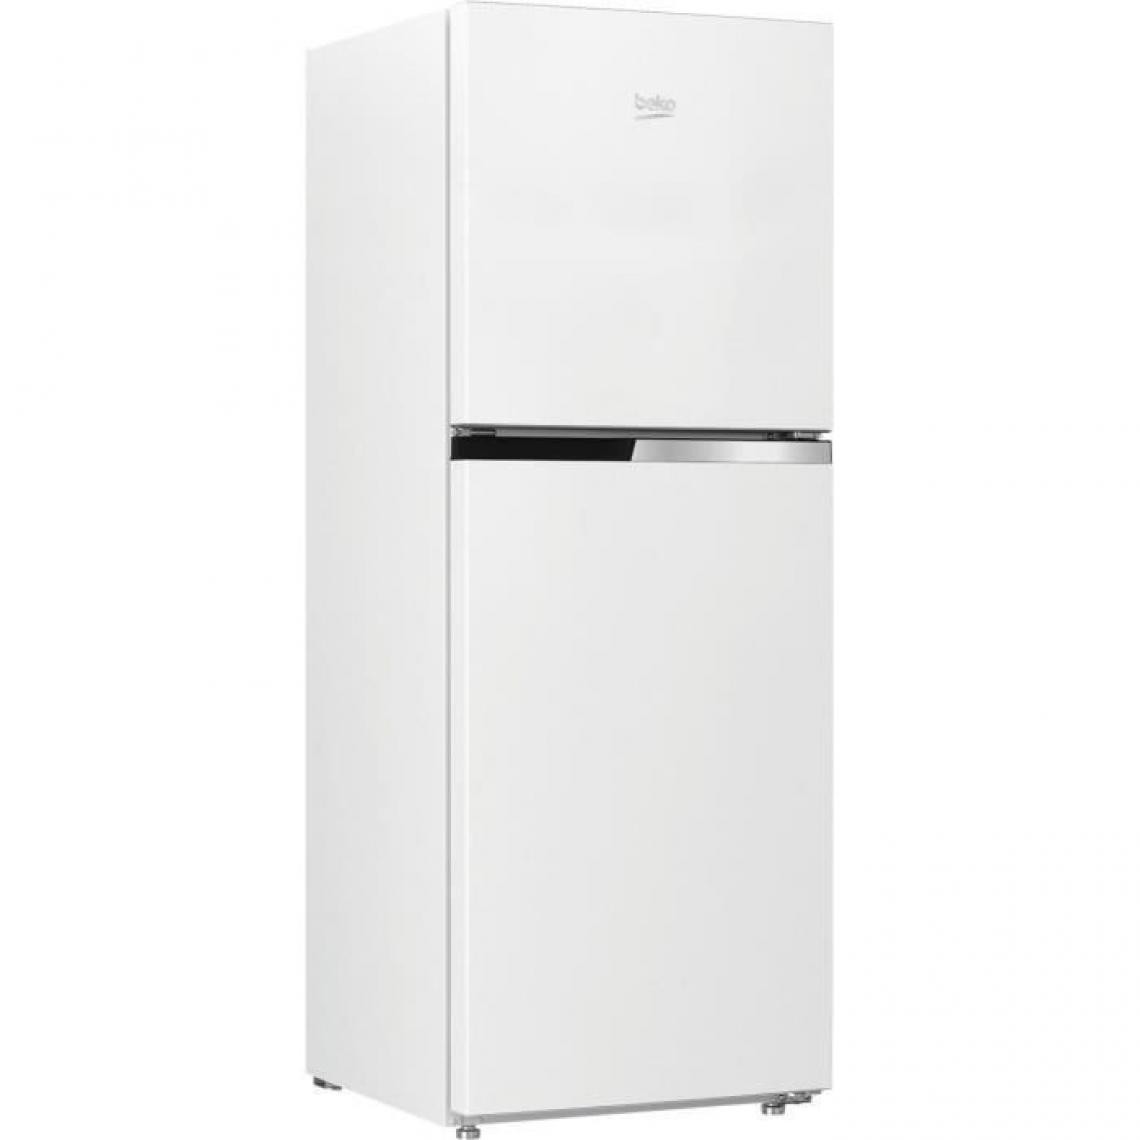 Beko - BEKO RDNT231I30WN - Refrigerateur double porte pose libre 210L 142+68L - Froid ventile - L54x H145cm - Blanc - Réfrigérateur